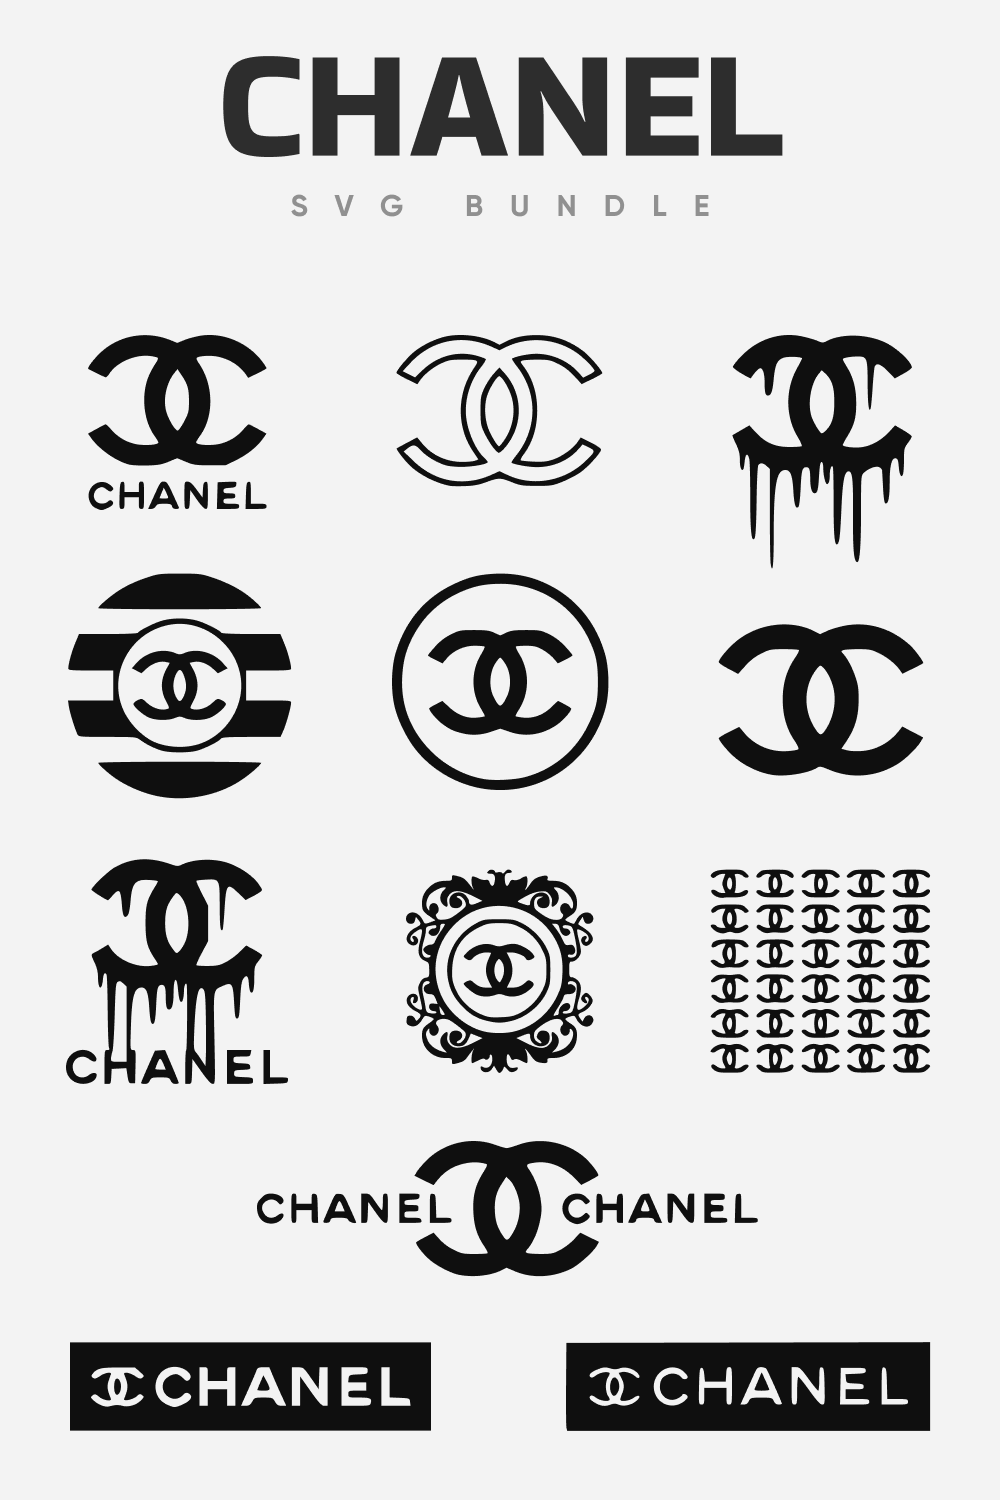 Chanel svg bundle.